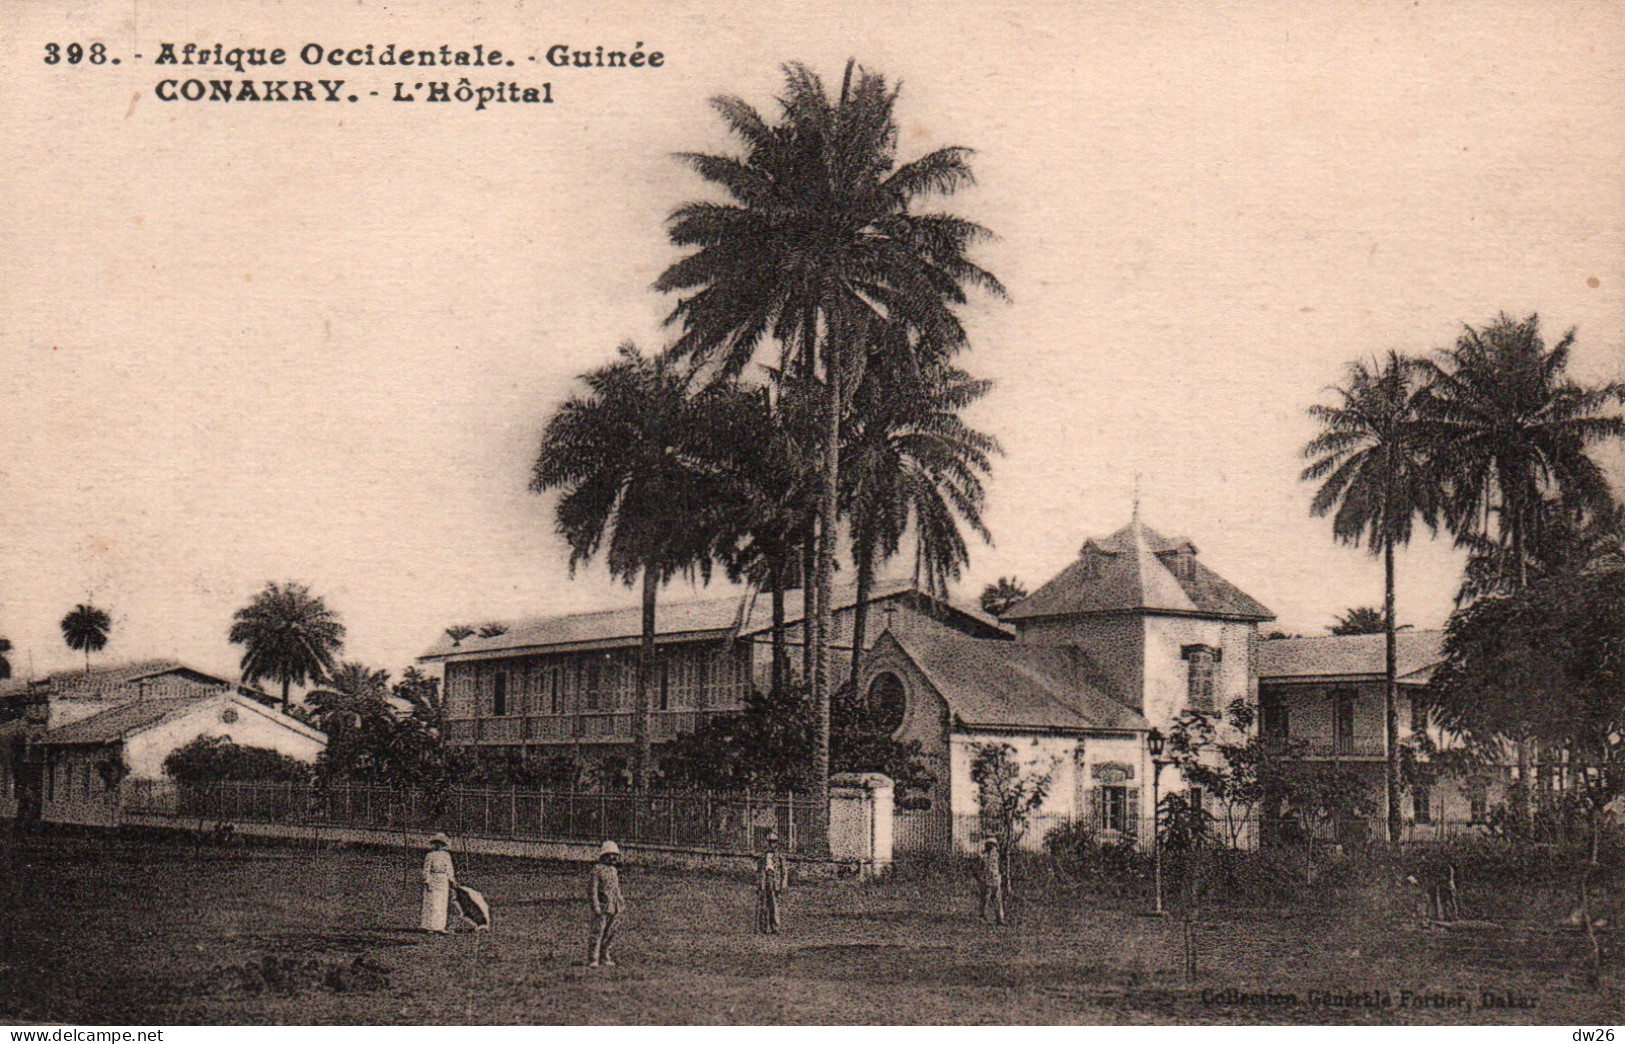 Afrique Occidentale - Guinée Française - Vue De L'Hôpital - Collection Fortier - Carte N° 398 - Französisch-Guinea